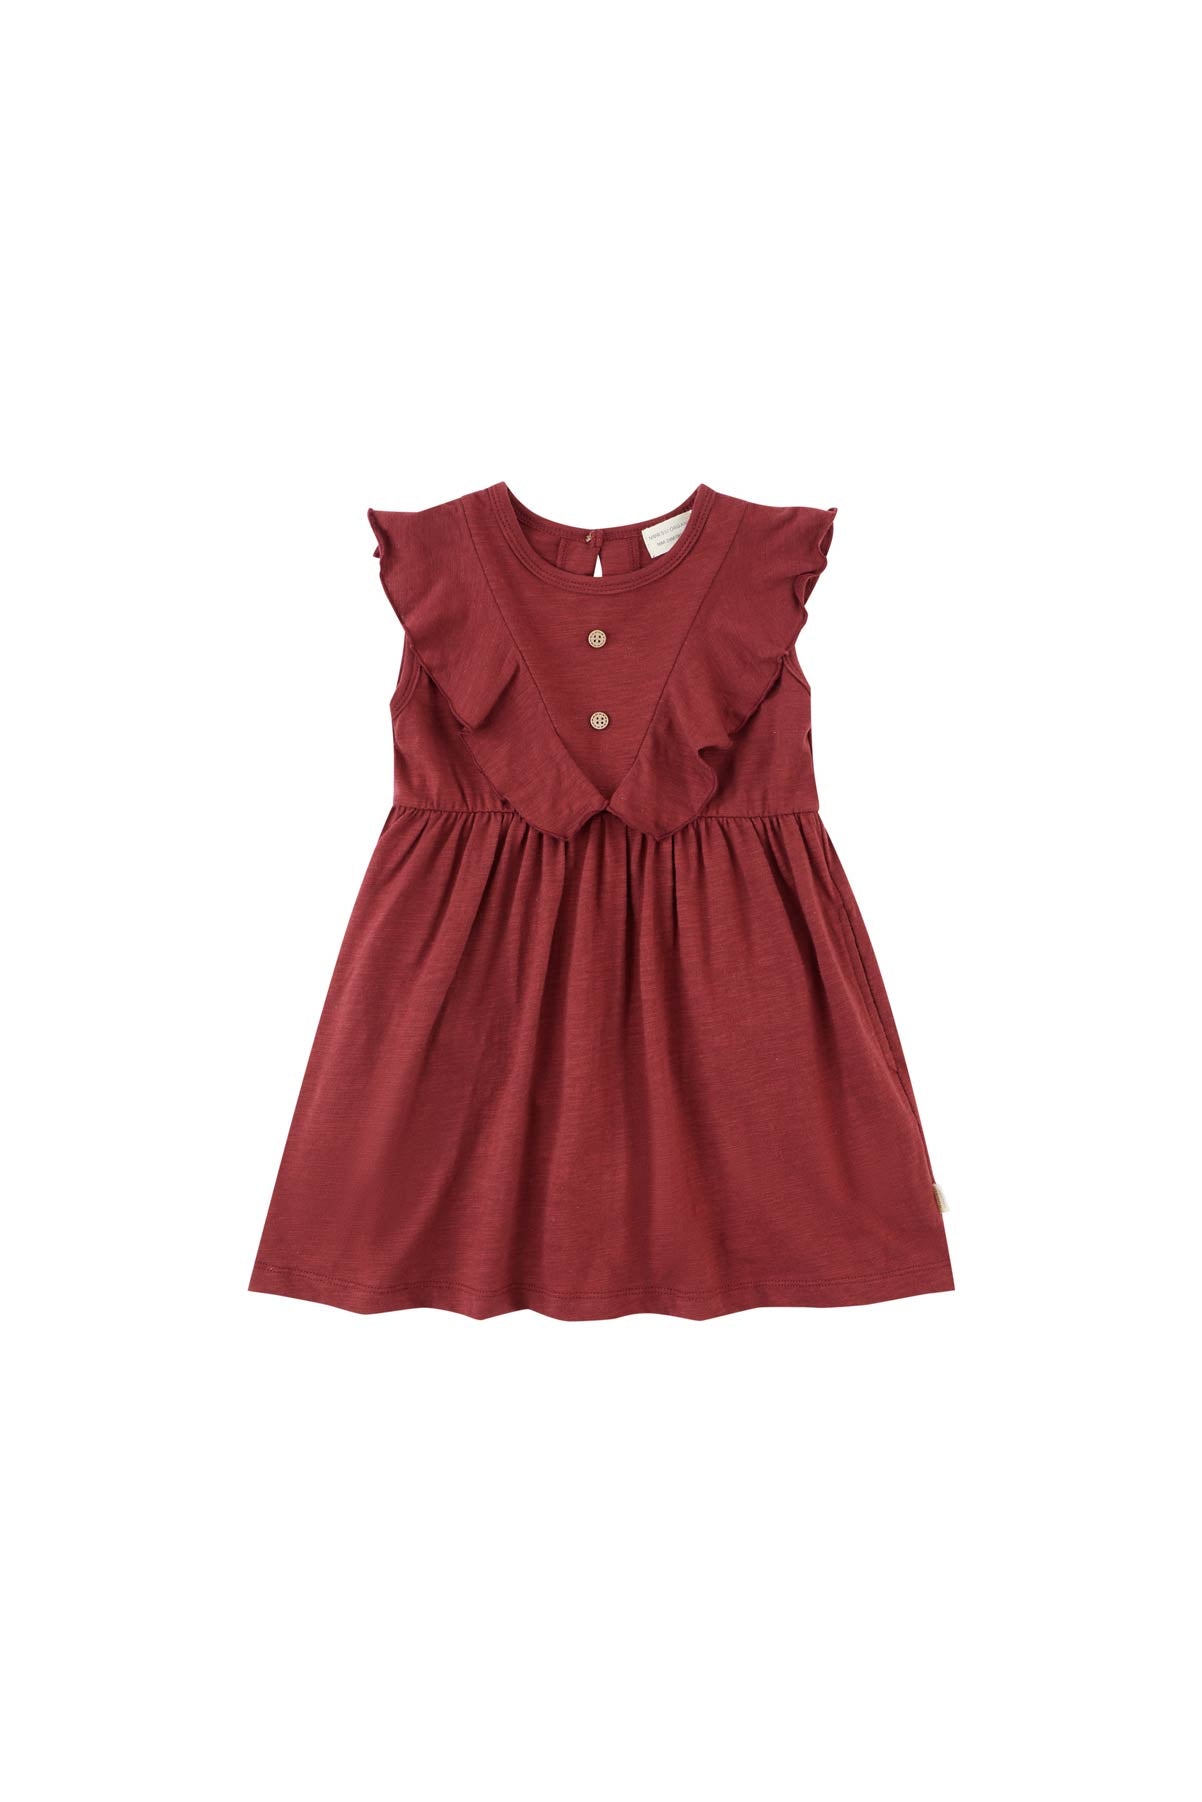 image for Girls Organic Ruffle Hem Dress-Wine Red